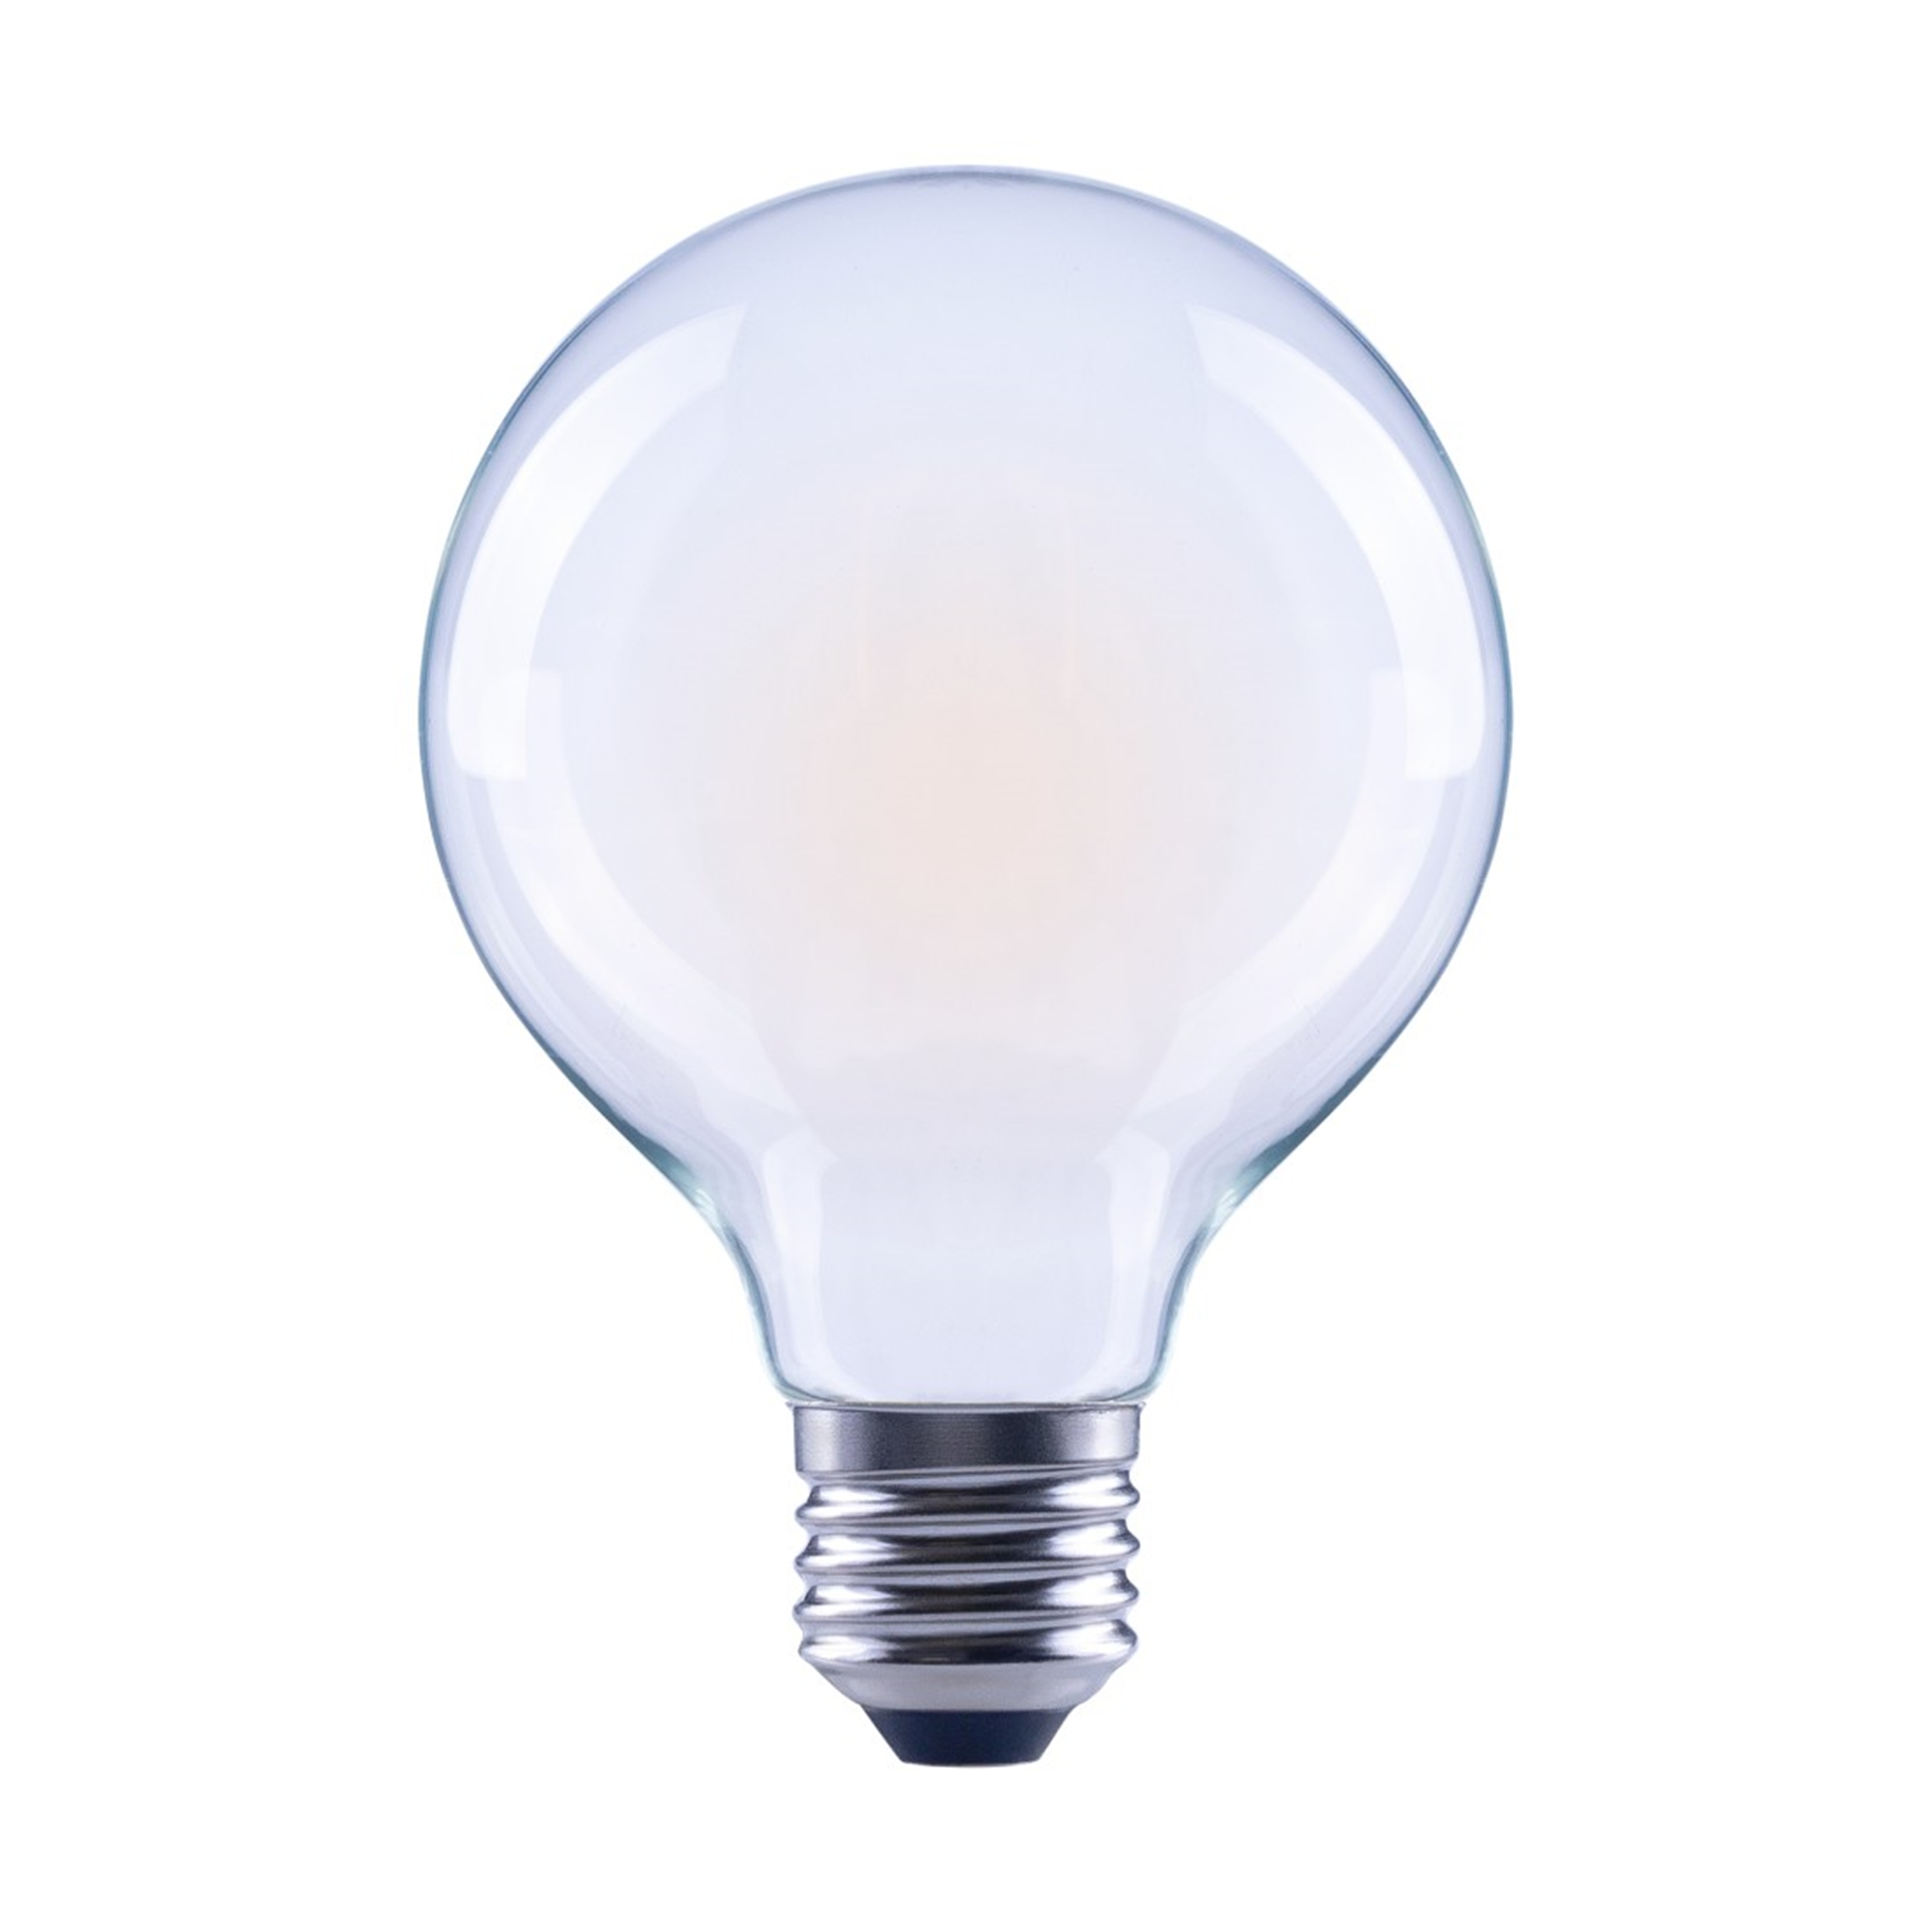 XAVAX E27, 470lm Warmweiß LED-Lampe E27 ersetzt 40W